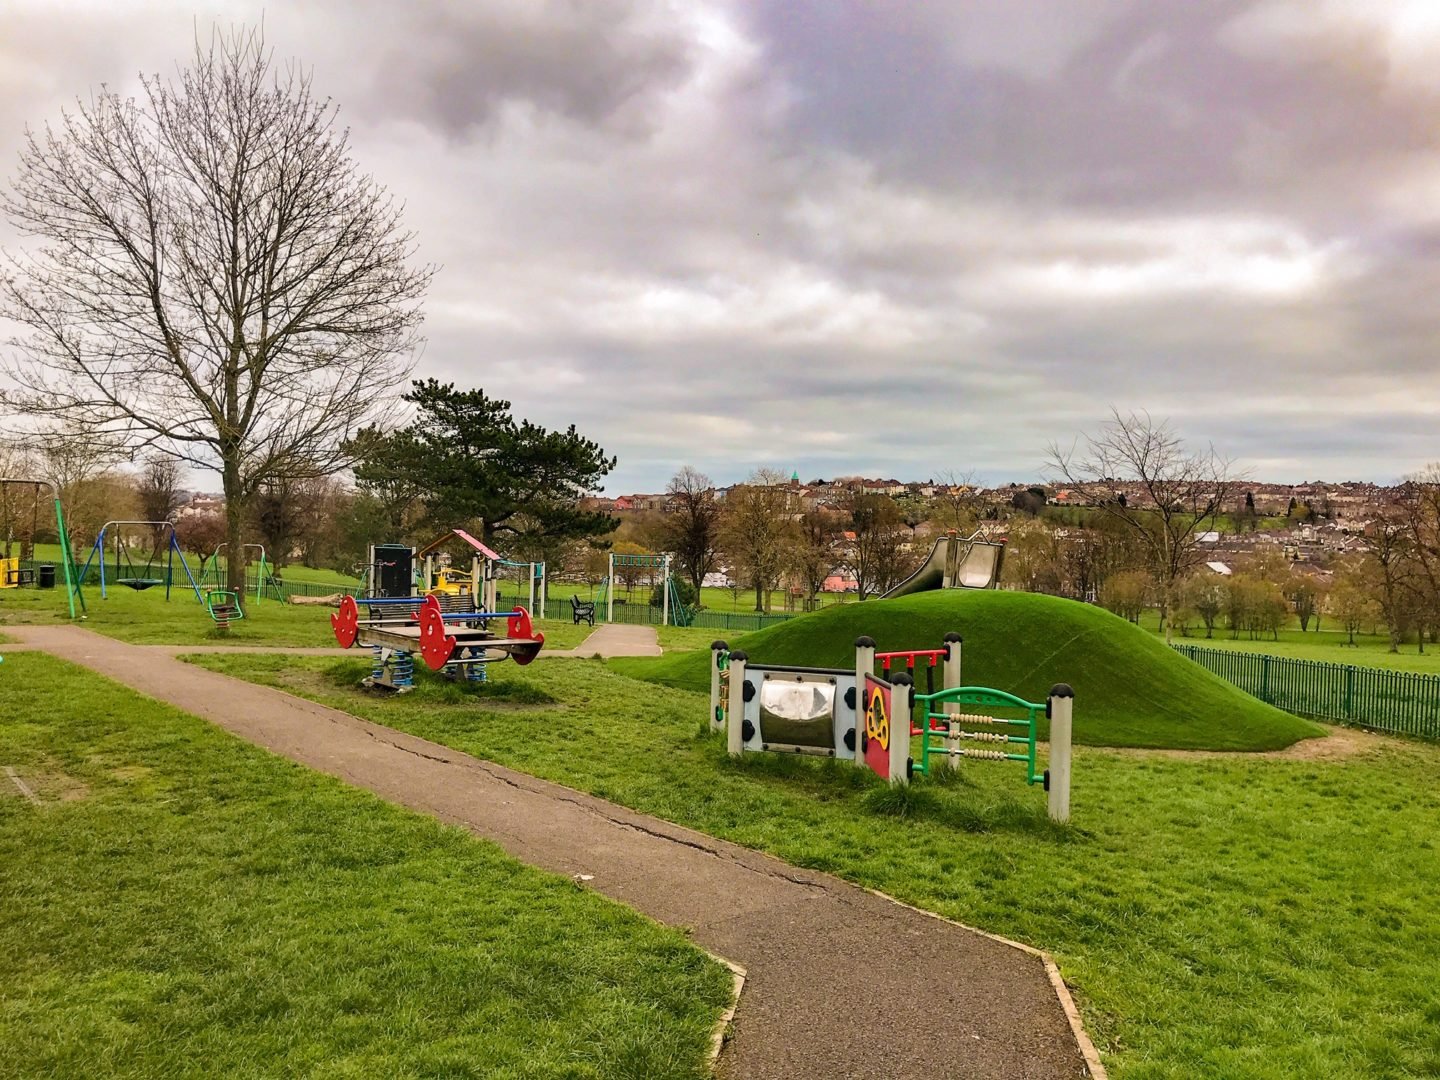 Victoria Park playground, Bedminster, Bristol